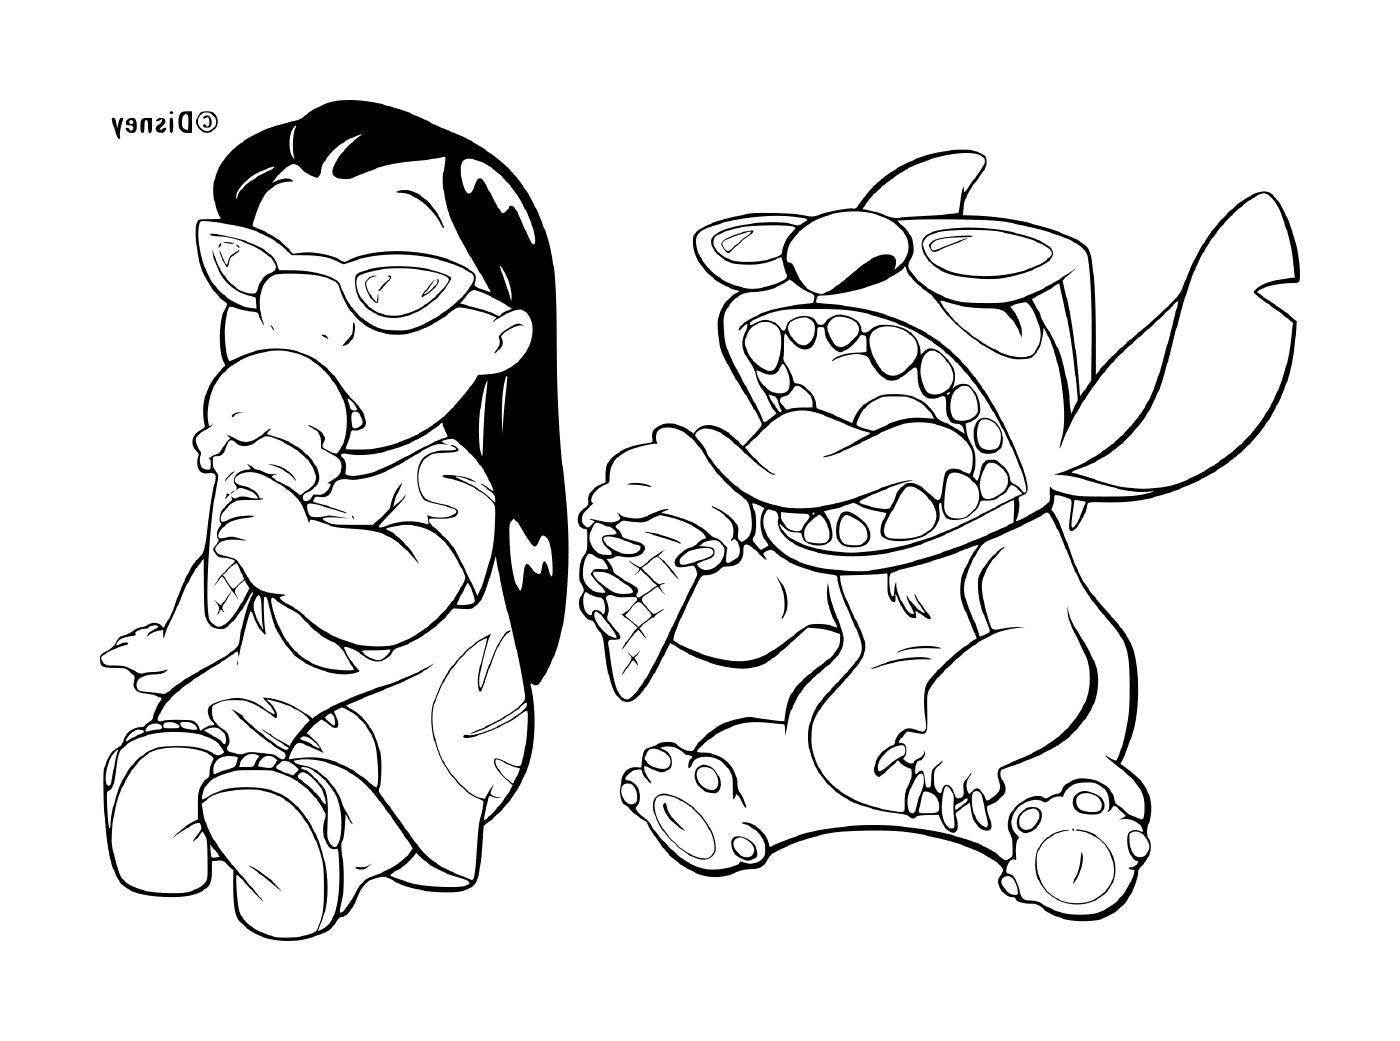  Dois personagens de desenhos animados, um dos quais come uma fatia de pizza 